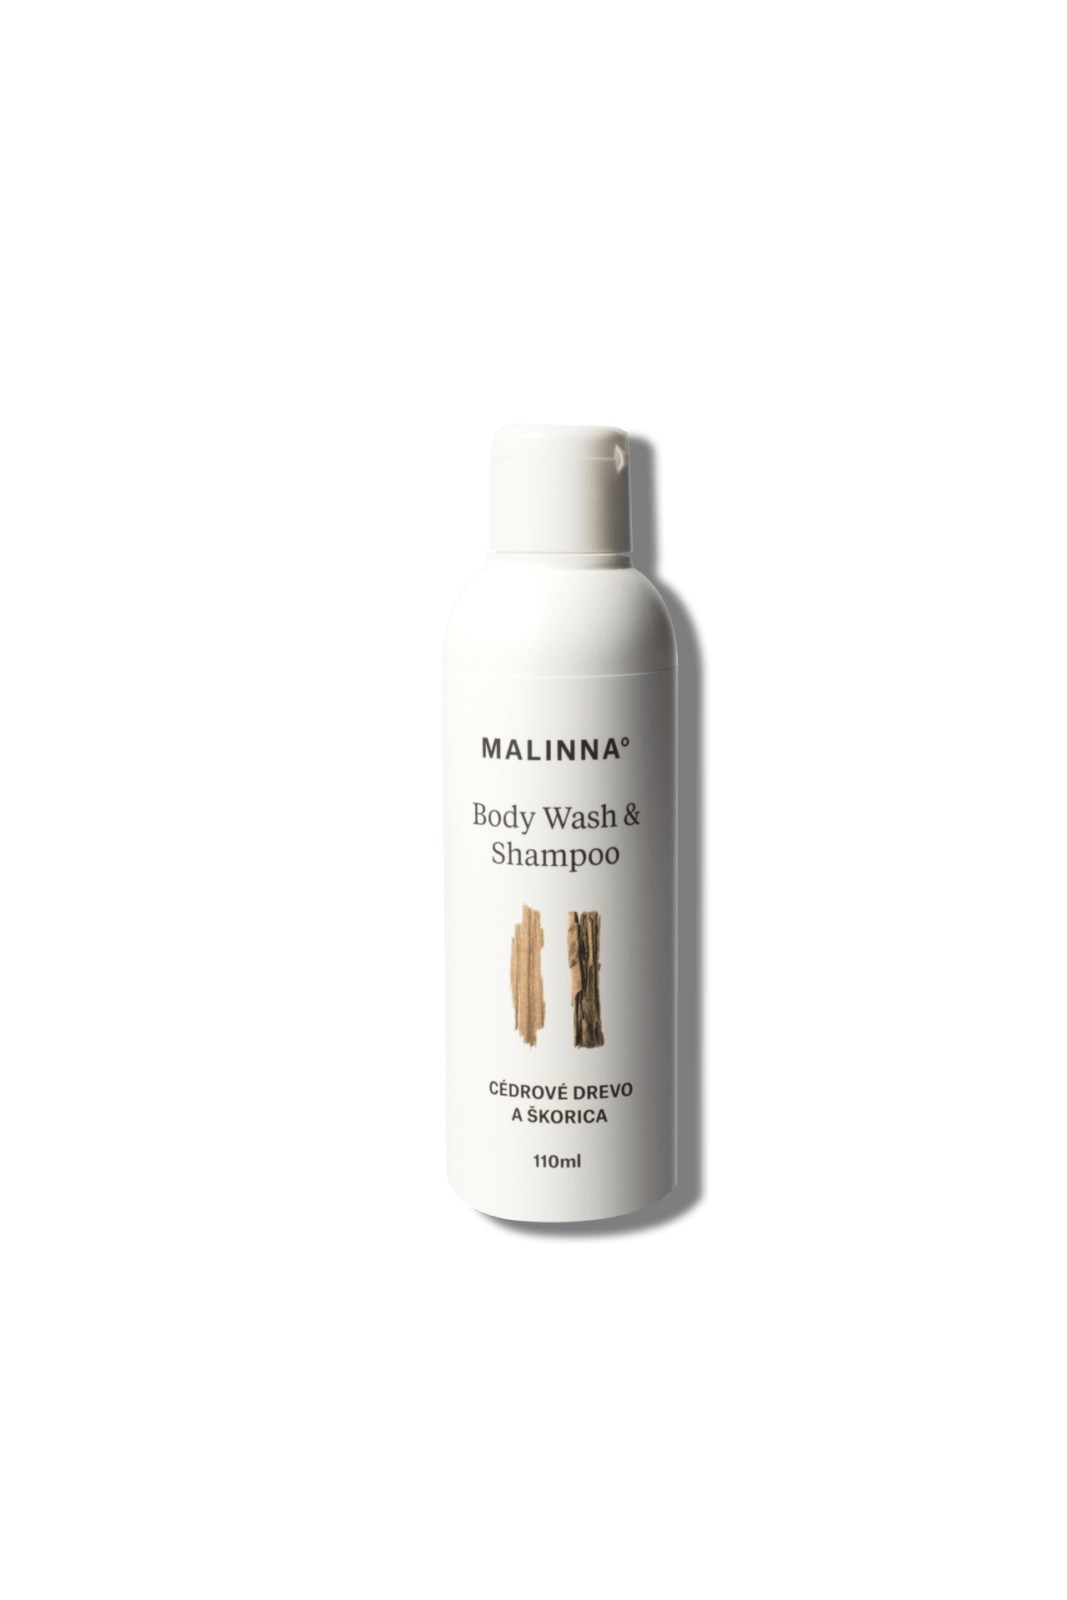 Body Wash&shampoo - Cedrové dvřevo a skořice